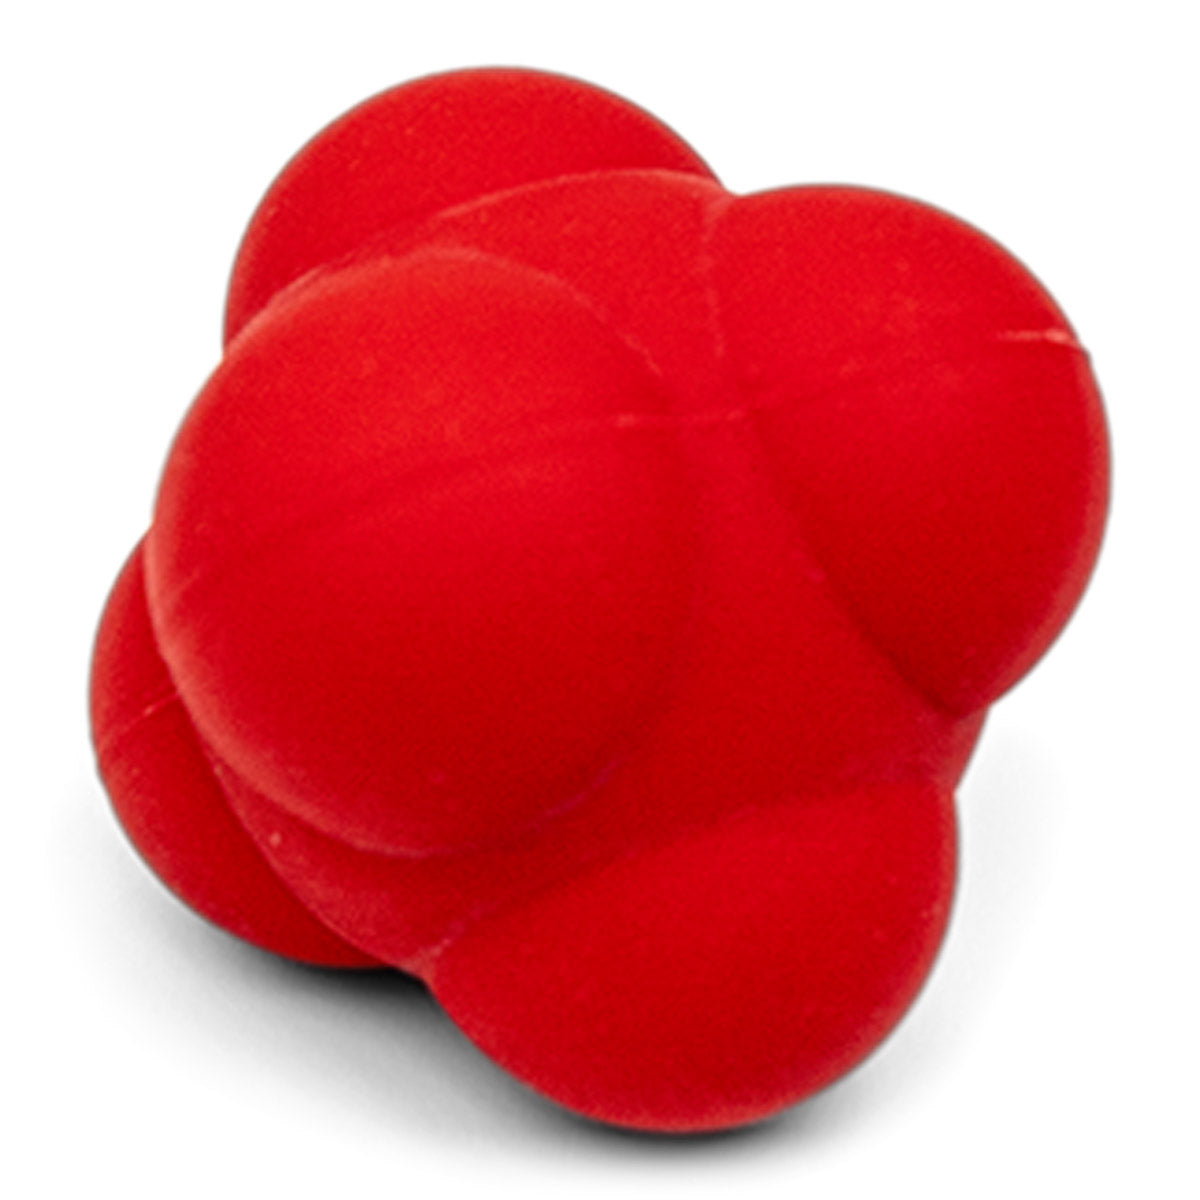 Se Reaktionsbold 7 cm rød (reaktions træner) hos Billig-fitness.dk